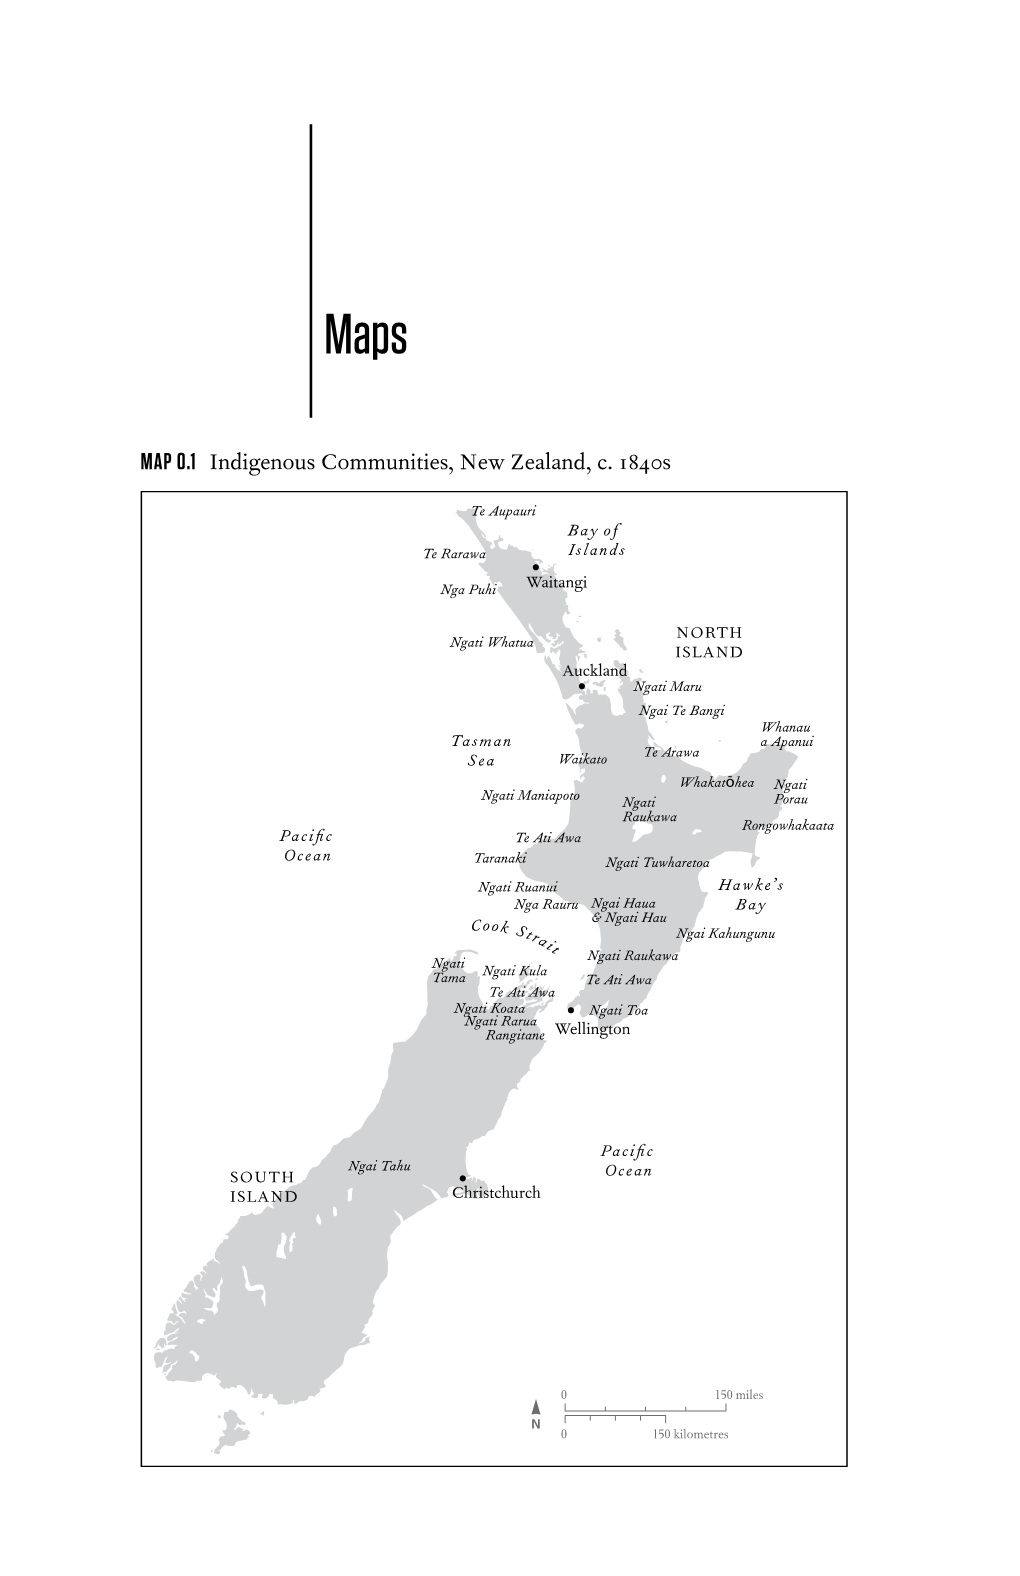 MAP 0.1 Indigenous Communities, New Zealand, C. 1840S